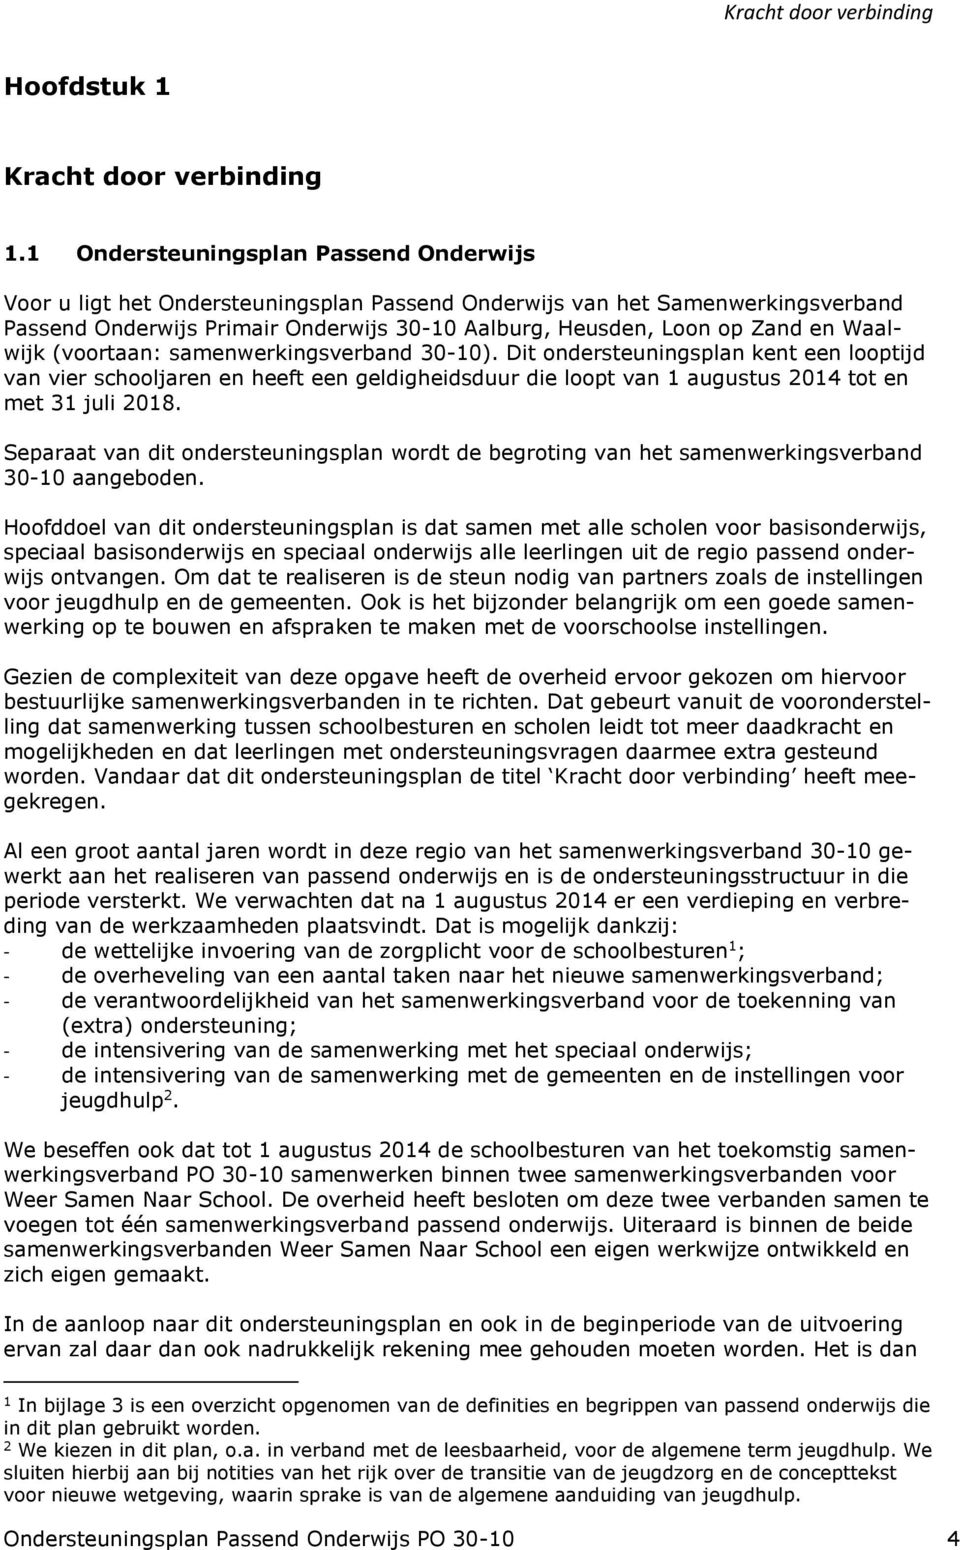 Waalwijk (voortaan: samenwerkingsverband 30-10). Dit ondersteuningsplan kent een looptijd van vier schooljaren en heeft een geldigheidsduur die loopt van 1 augustus 2014 tot en met 31 juli 2018.